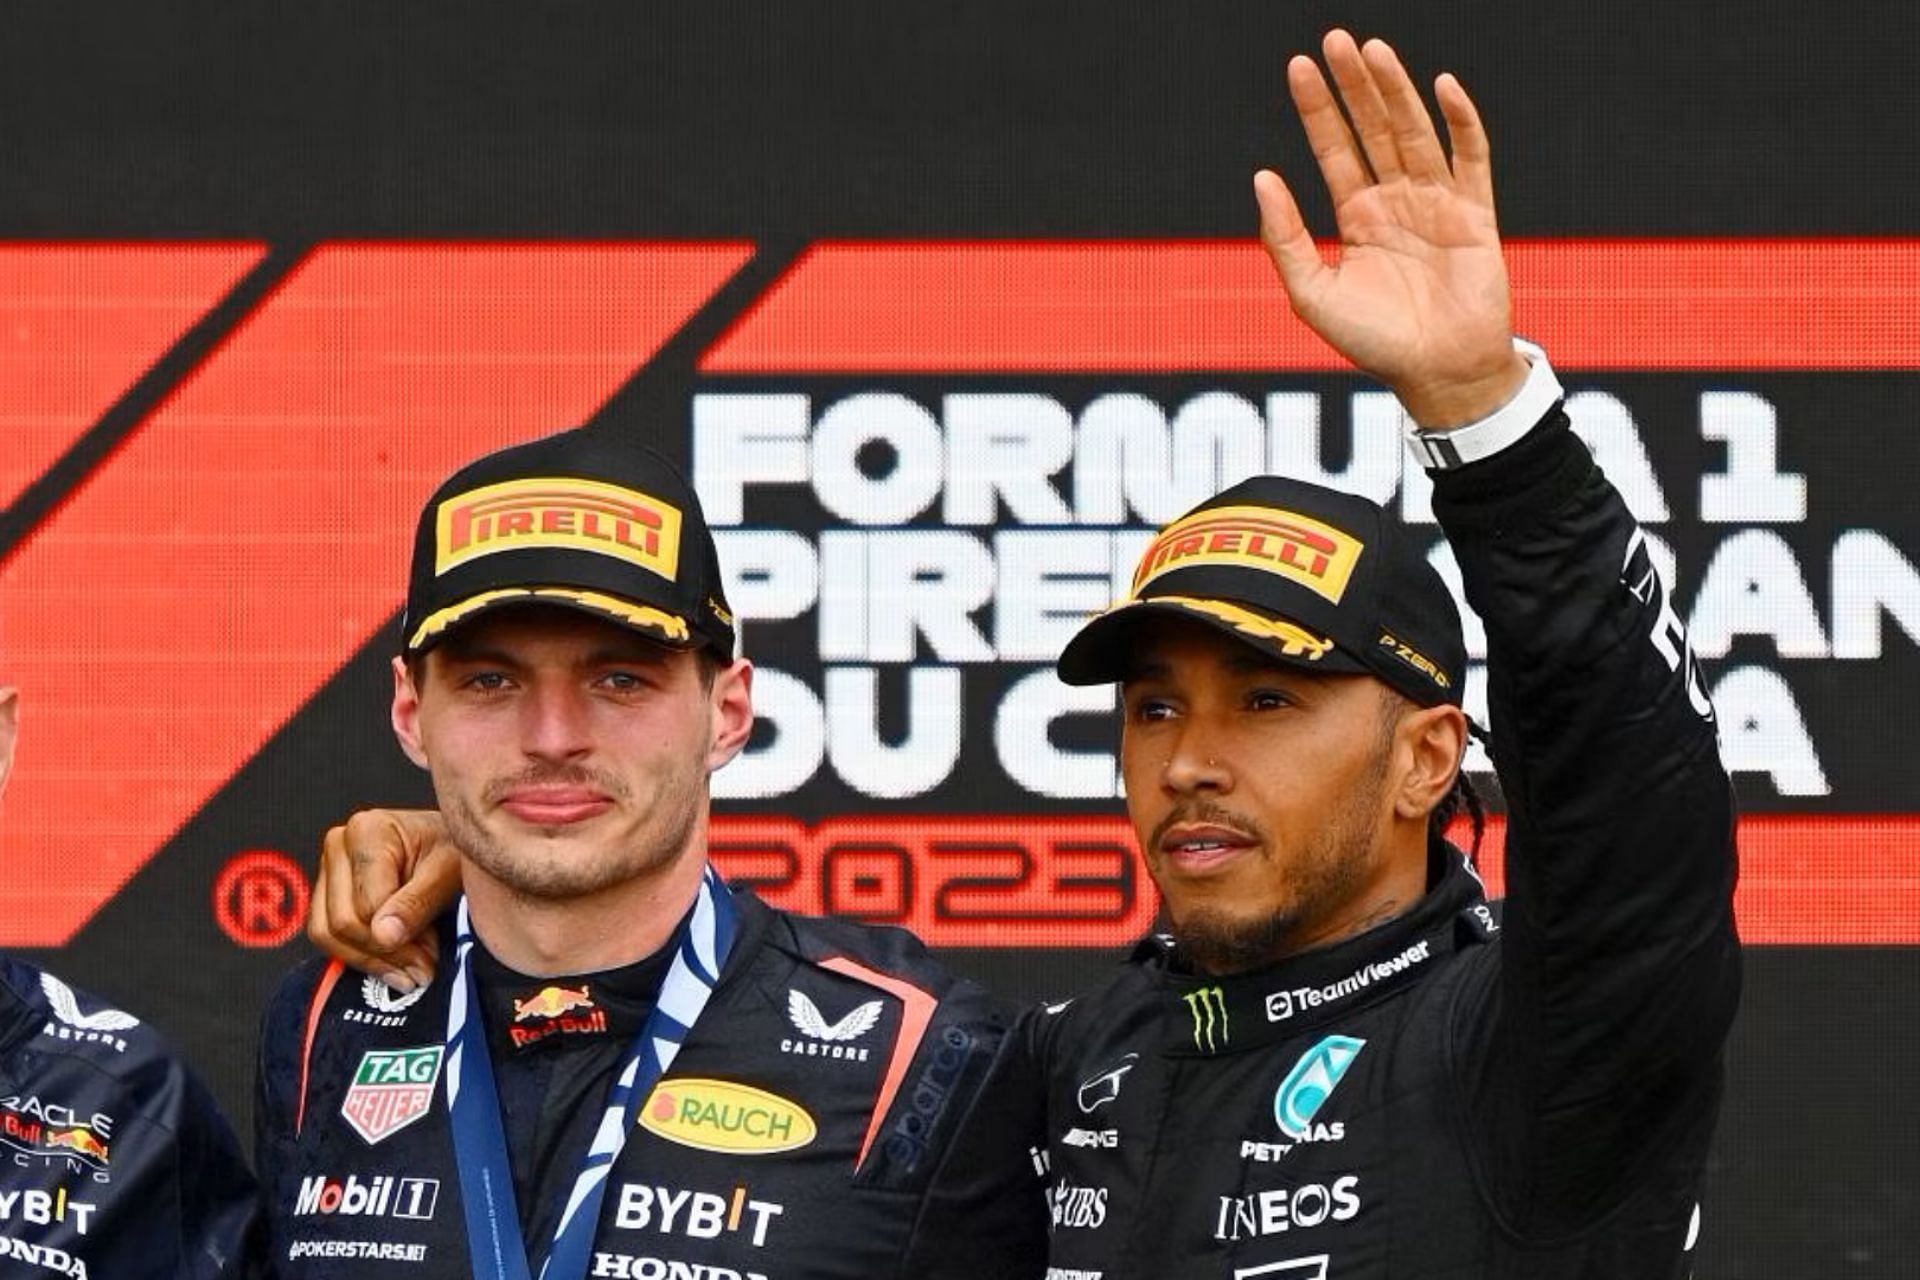 Volgens F1 Expert is Max Verstappen populairder in Nederland dan Lewis Hamilton in Groot-Brittannië.